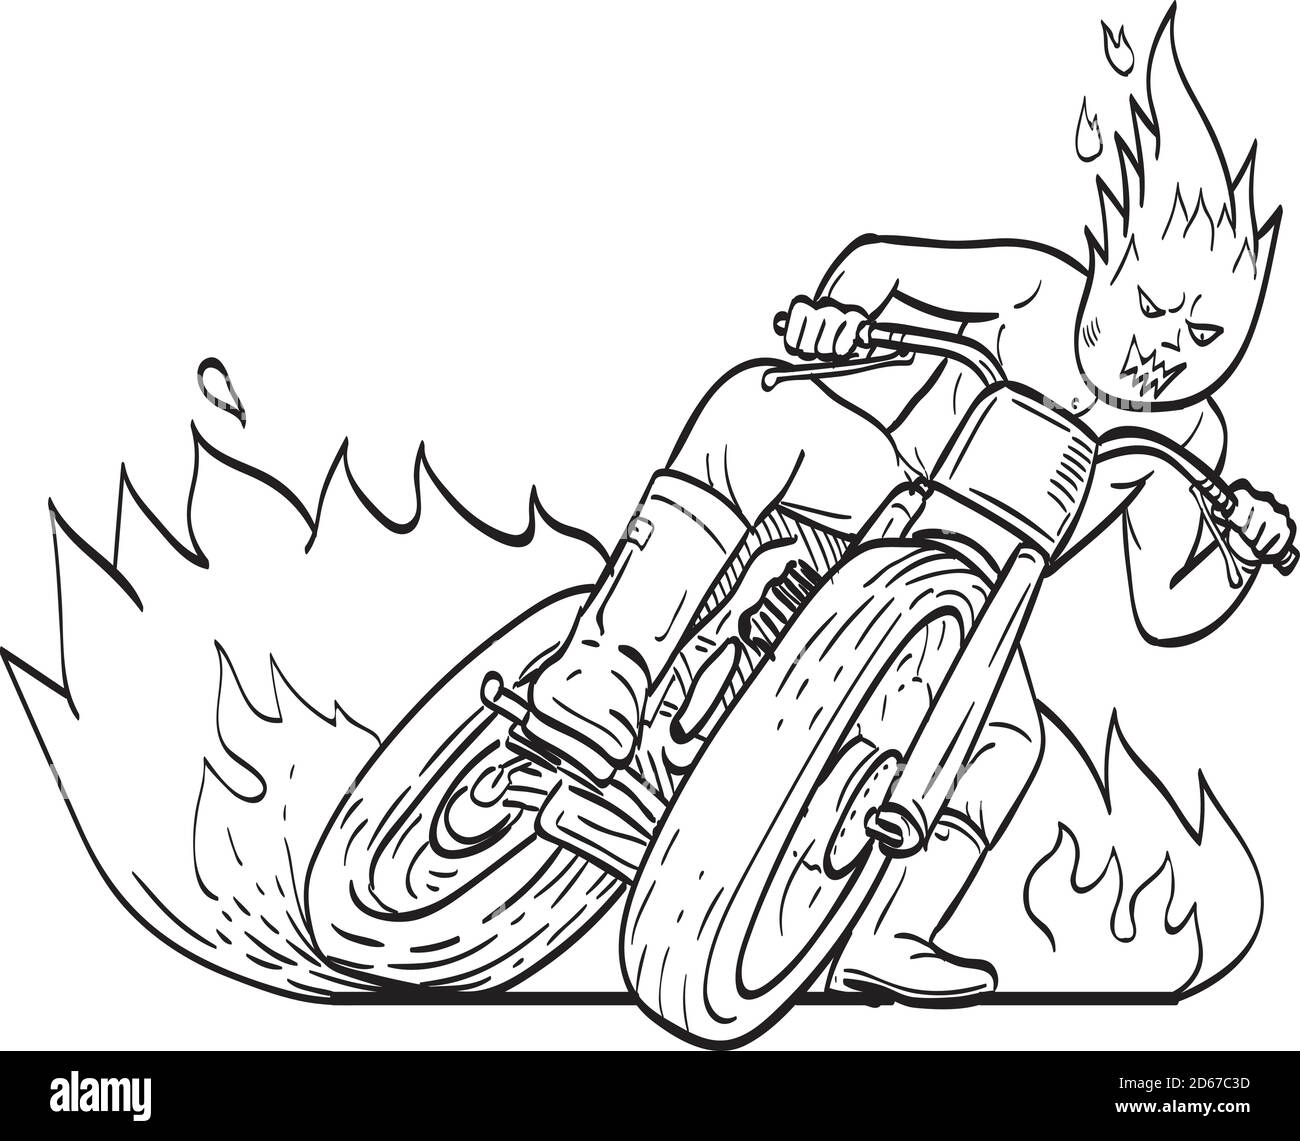 Disegno di linea dell'illustrazione del driver del motociclo con testa di bolide che guida la motocicletta che guida la pista piatta, anche conosciuta come pista di sporcizia che corre, sul fuoco An Illustrazione Vettoriale